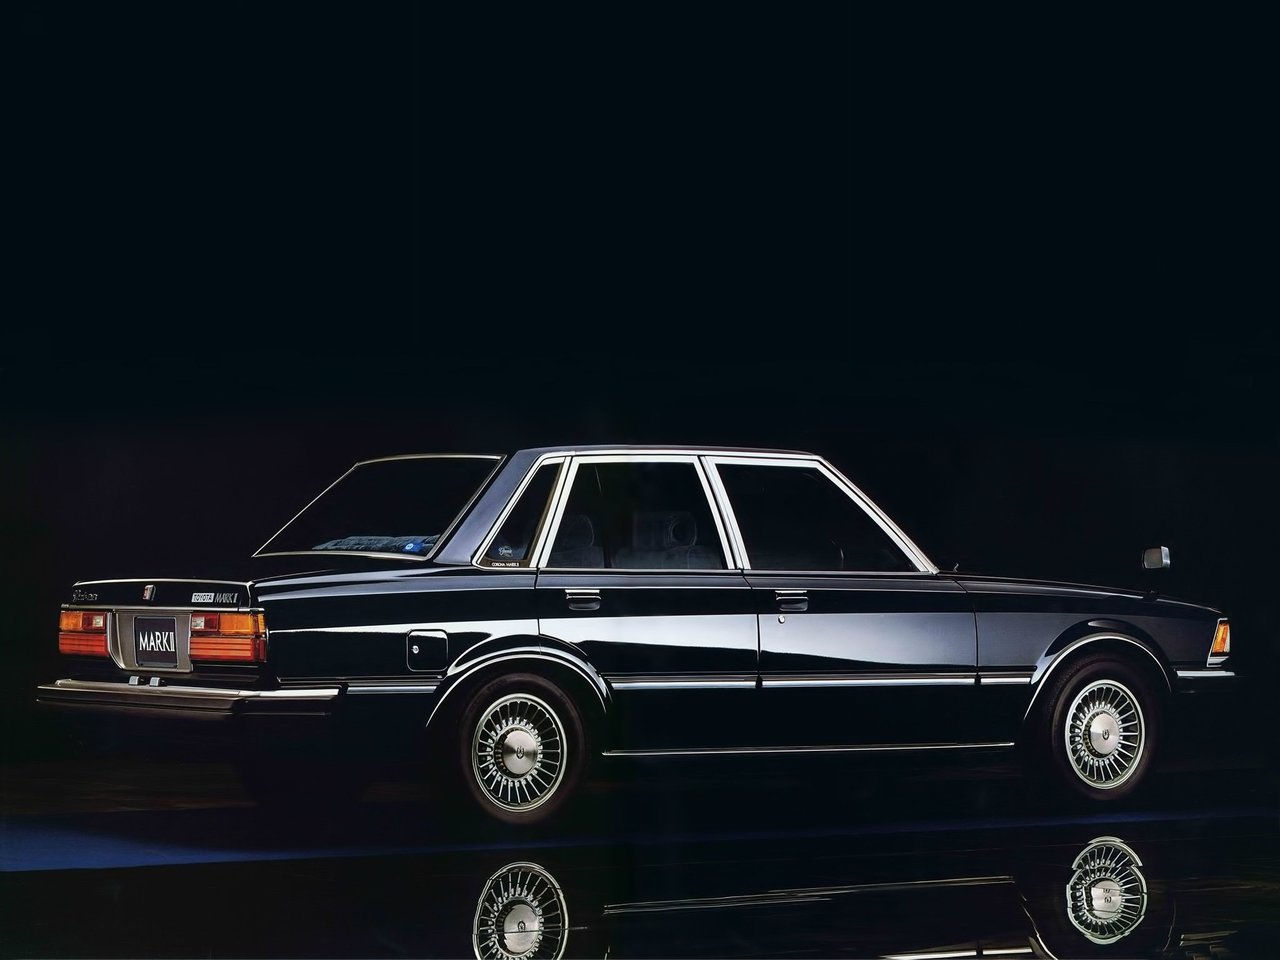     2 4  X60 1980 - 1984  